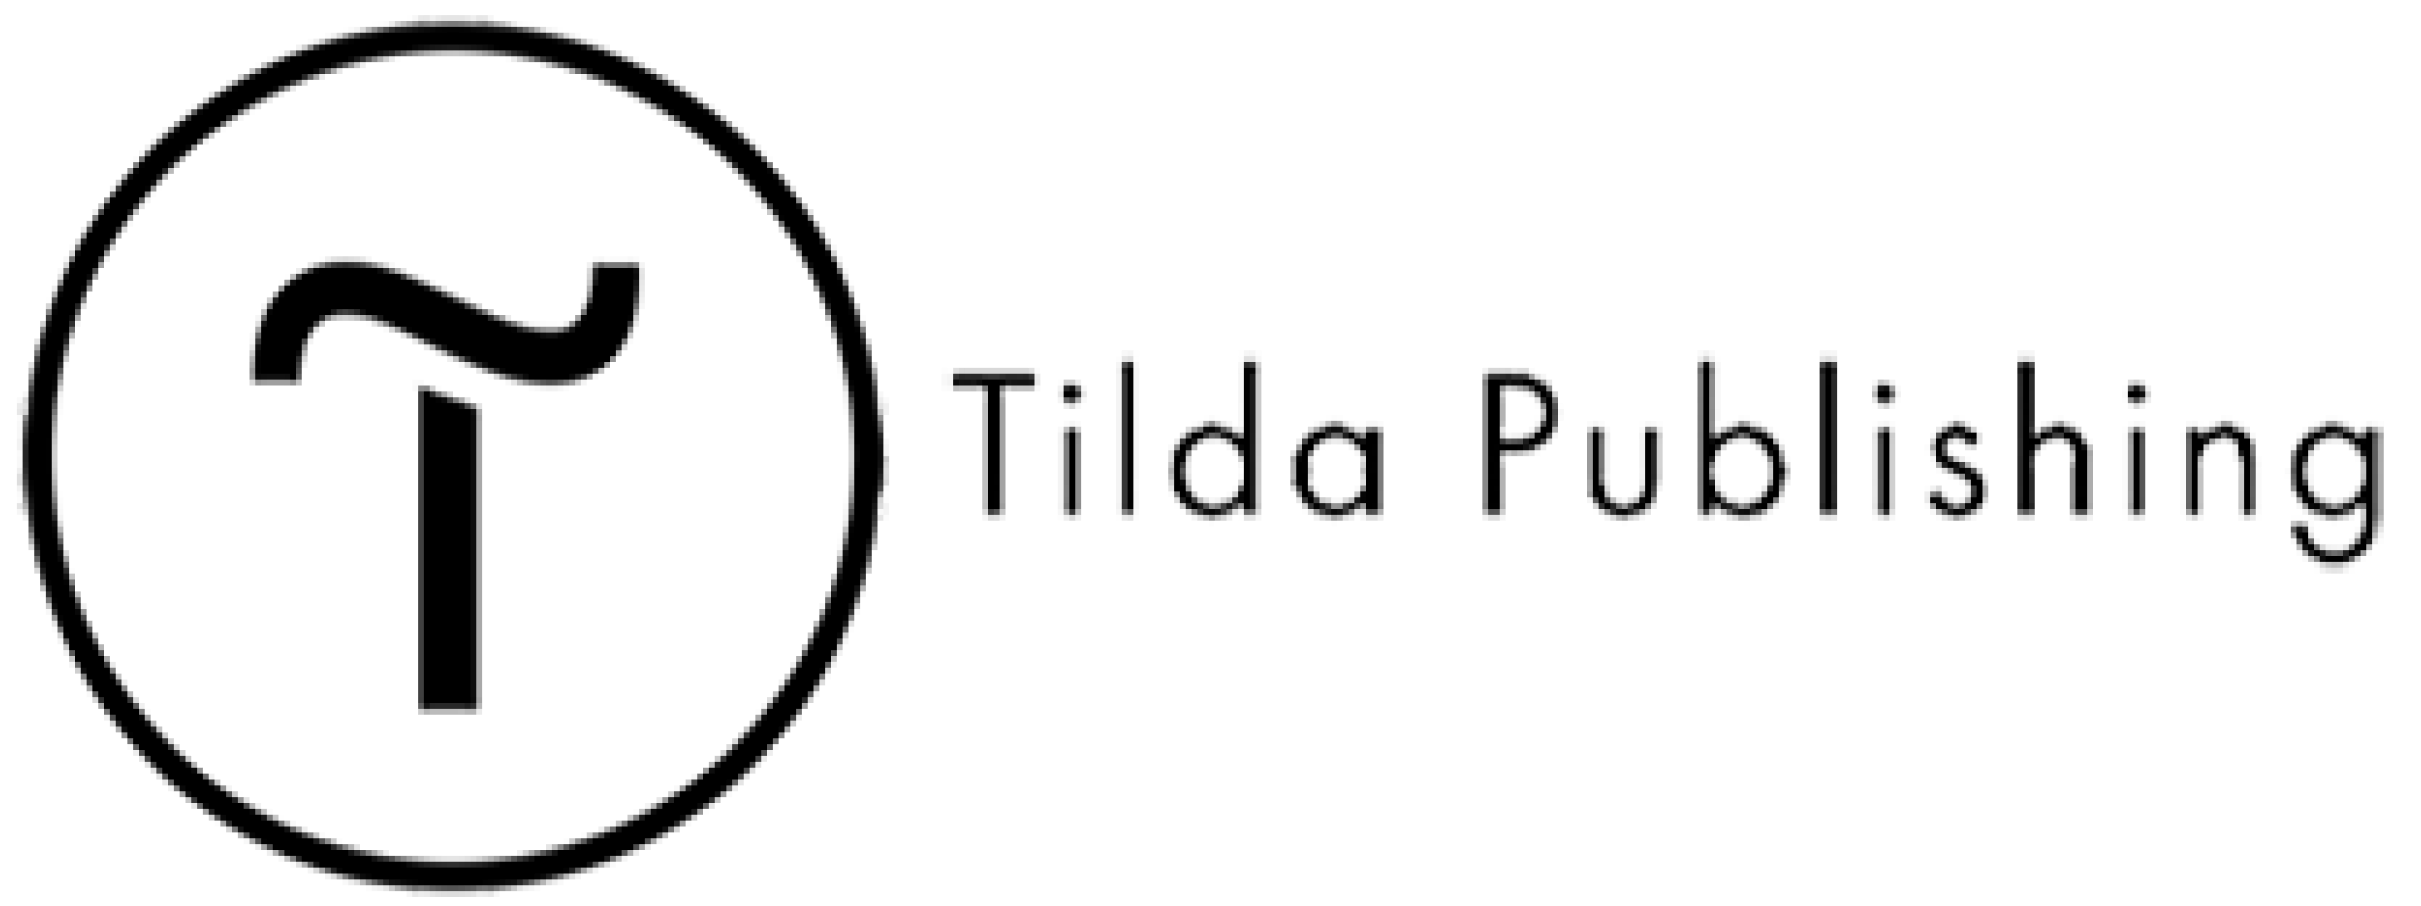 Tilda desktop. Тильда логотип. Tilda Publishing логотип. Тильда Паблишинг лого. Логотип Тильда без фона.